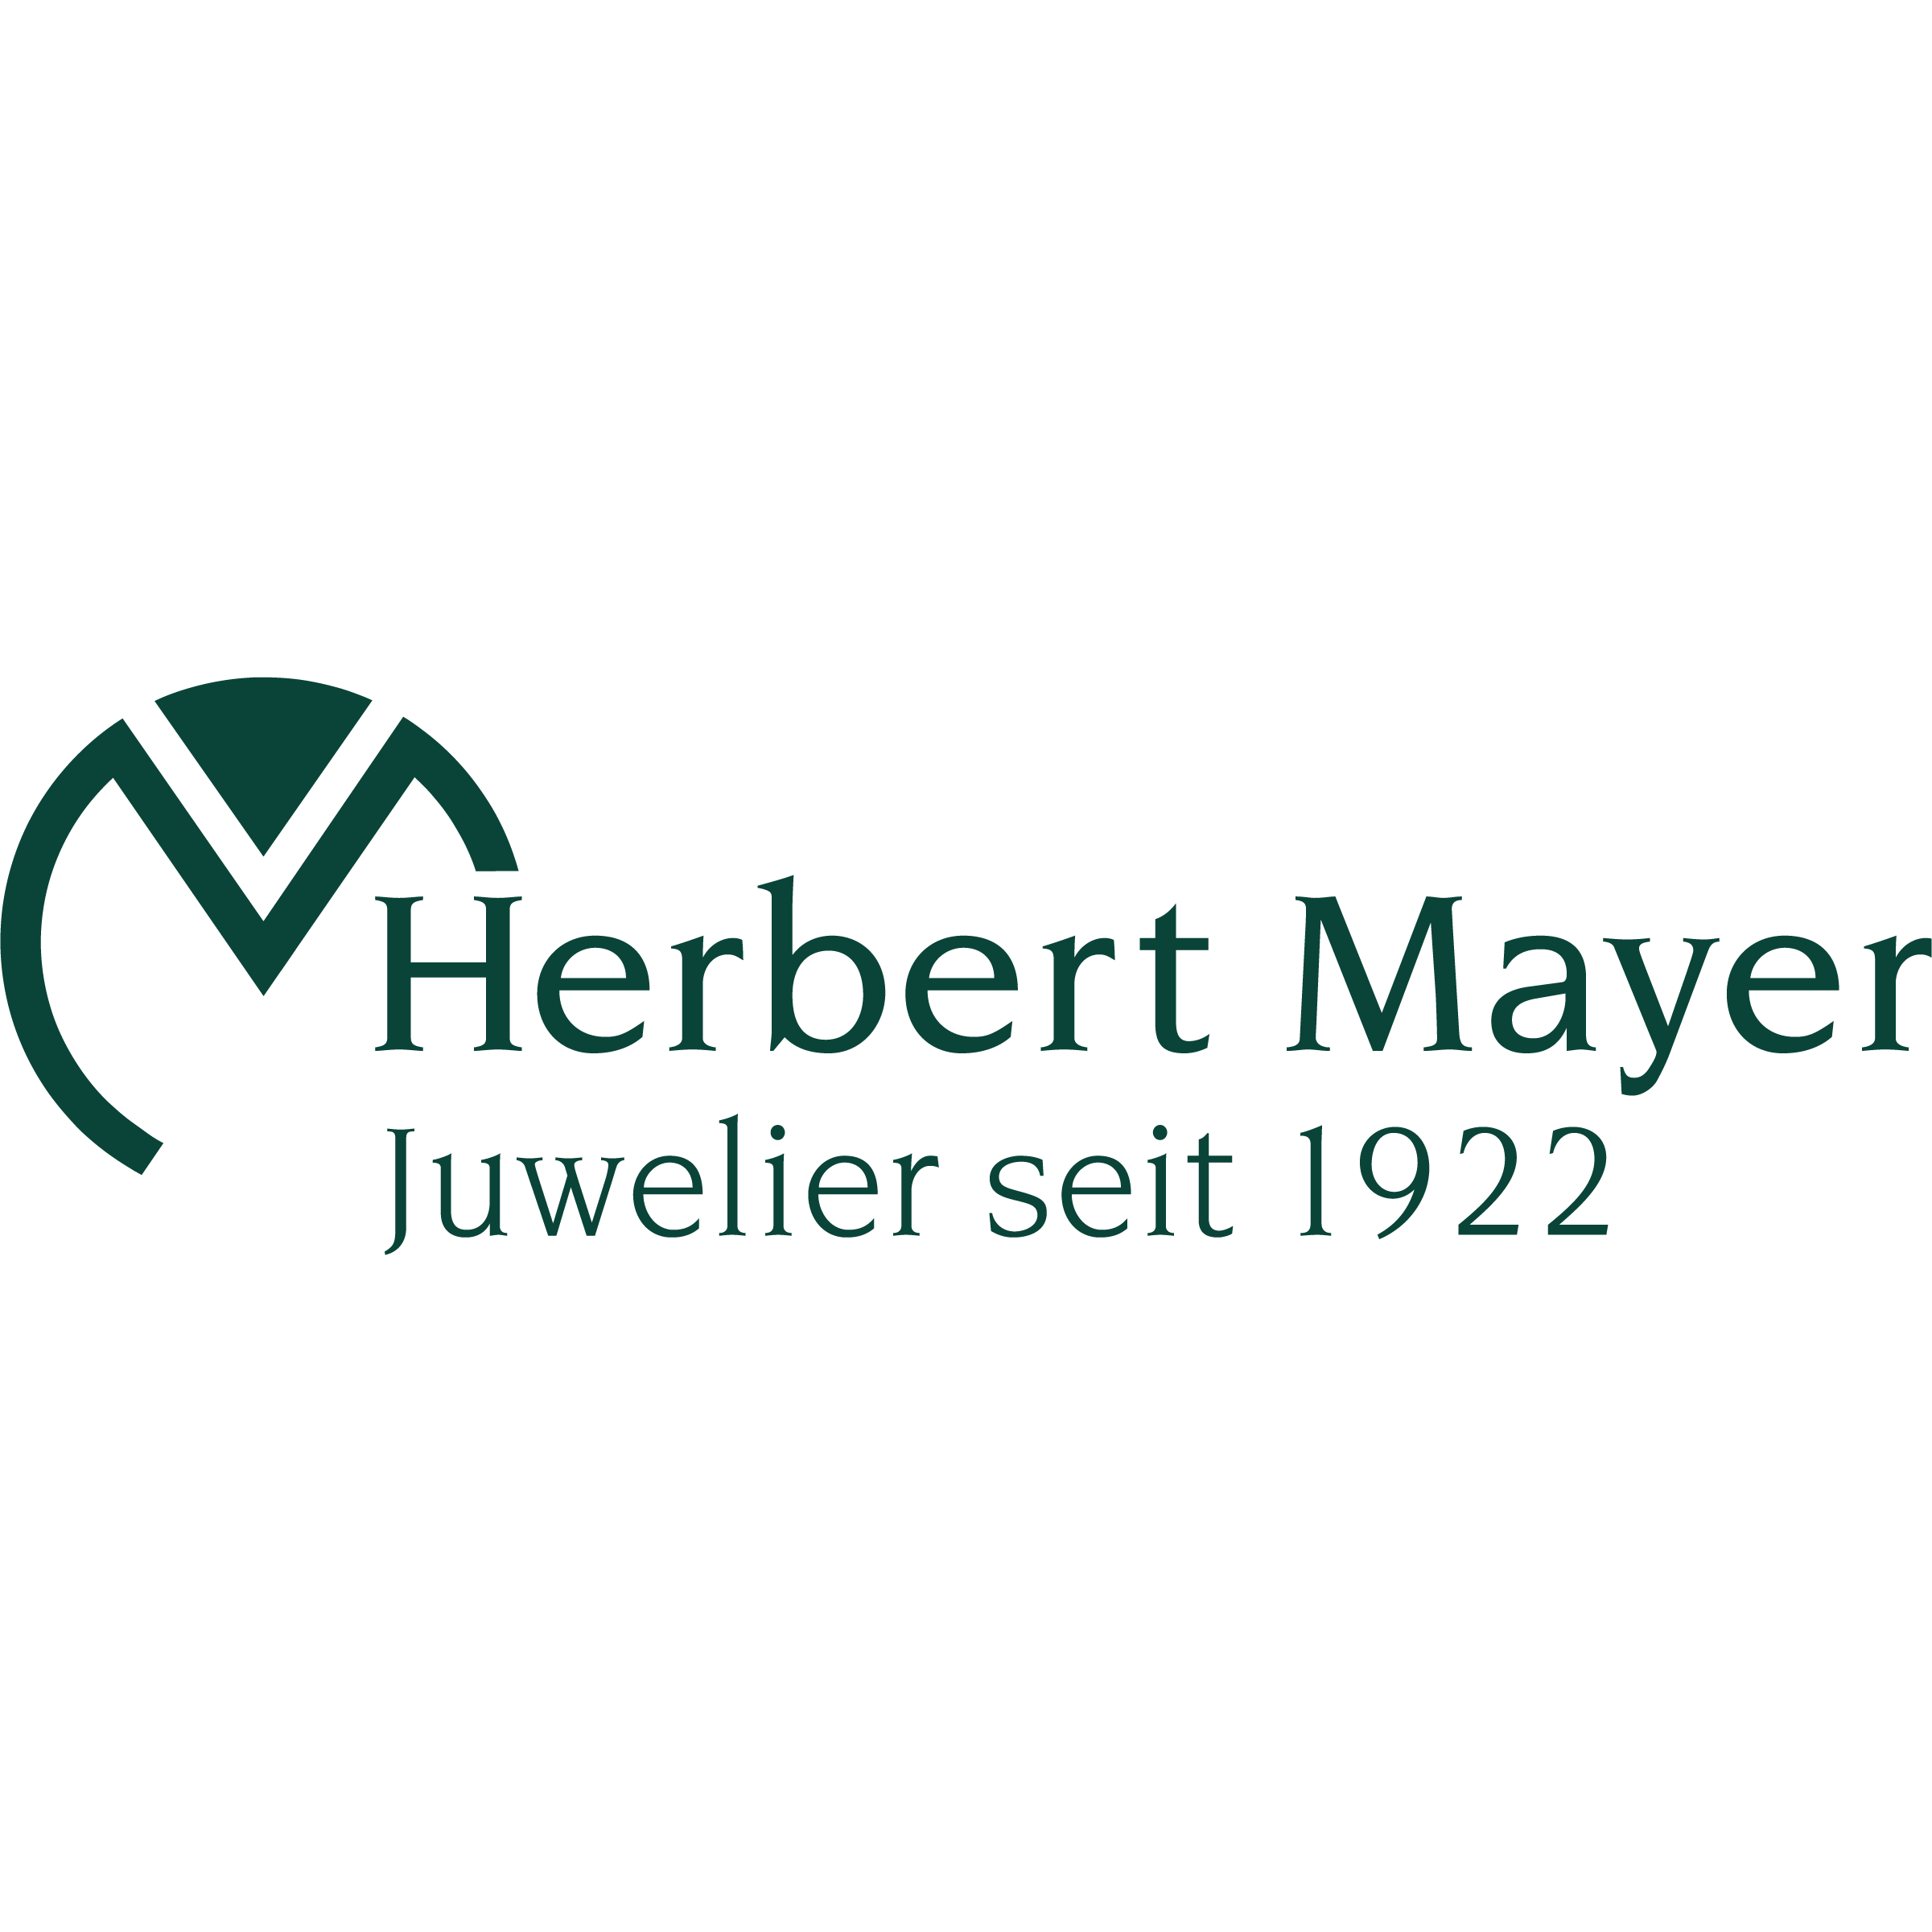 Herbert Mayer - Juwelier seit 1922.